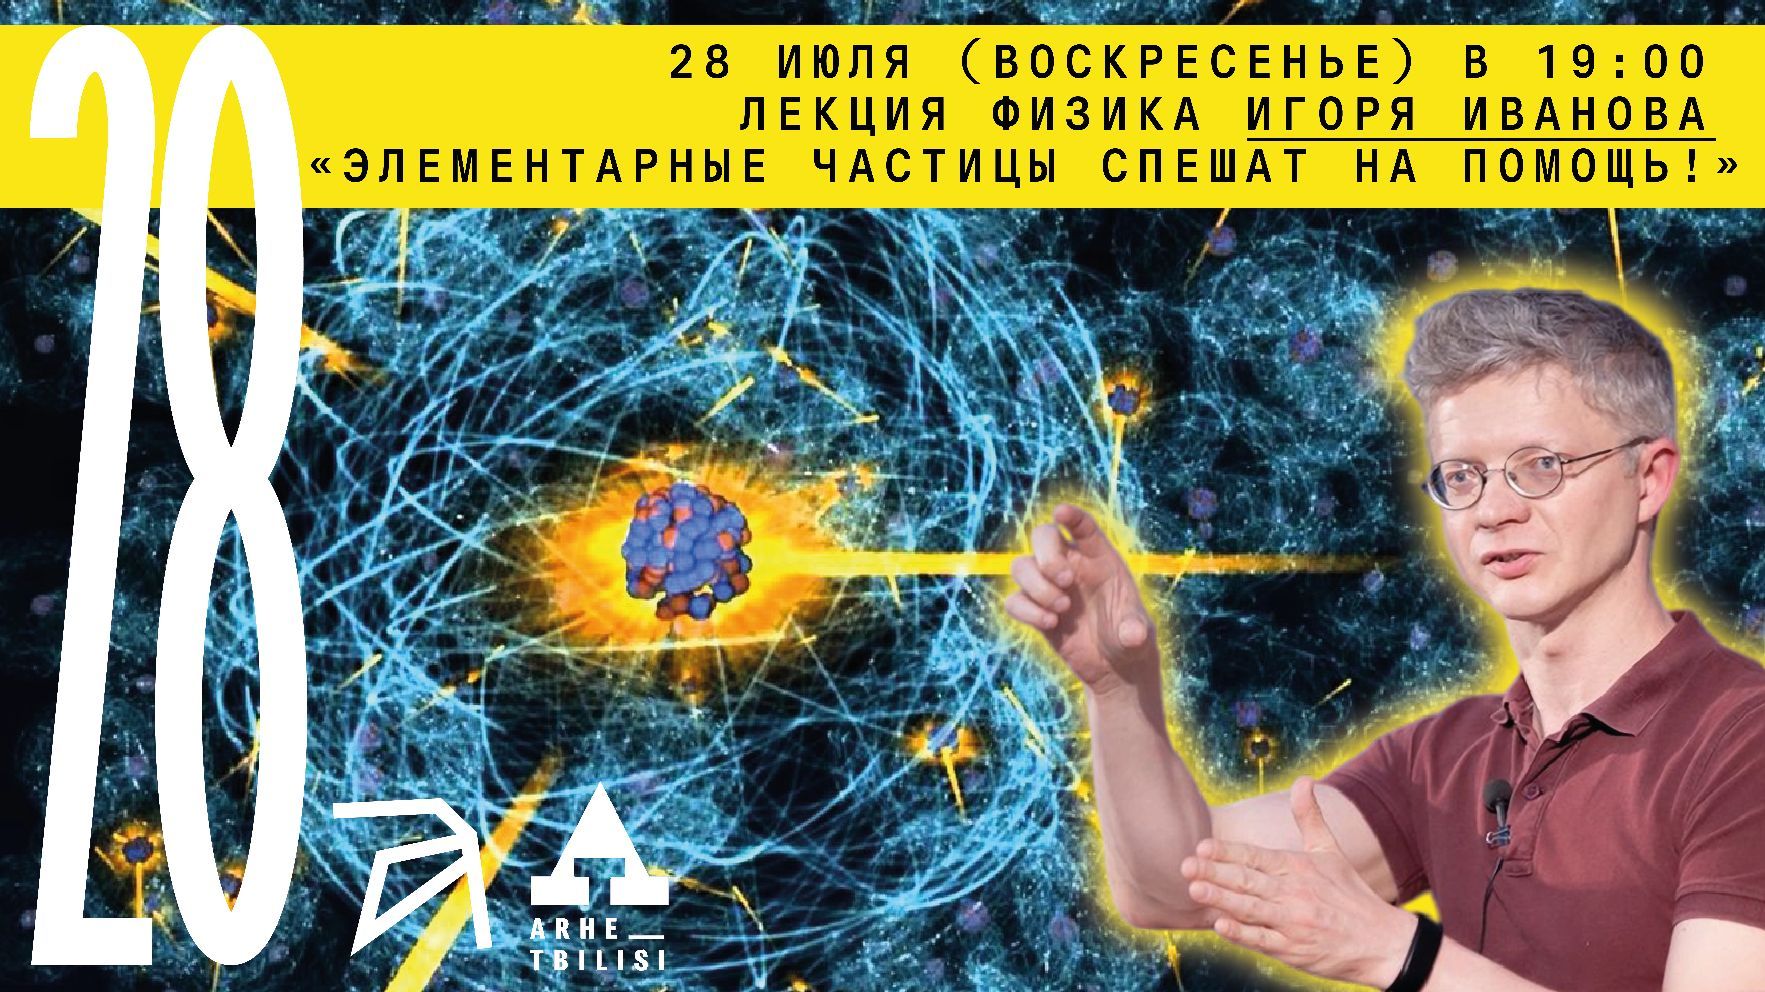 Онлайн-лекция физика Игоря Иванова "Элементарные частицы спешат на помощь!"